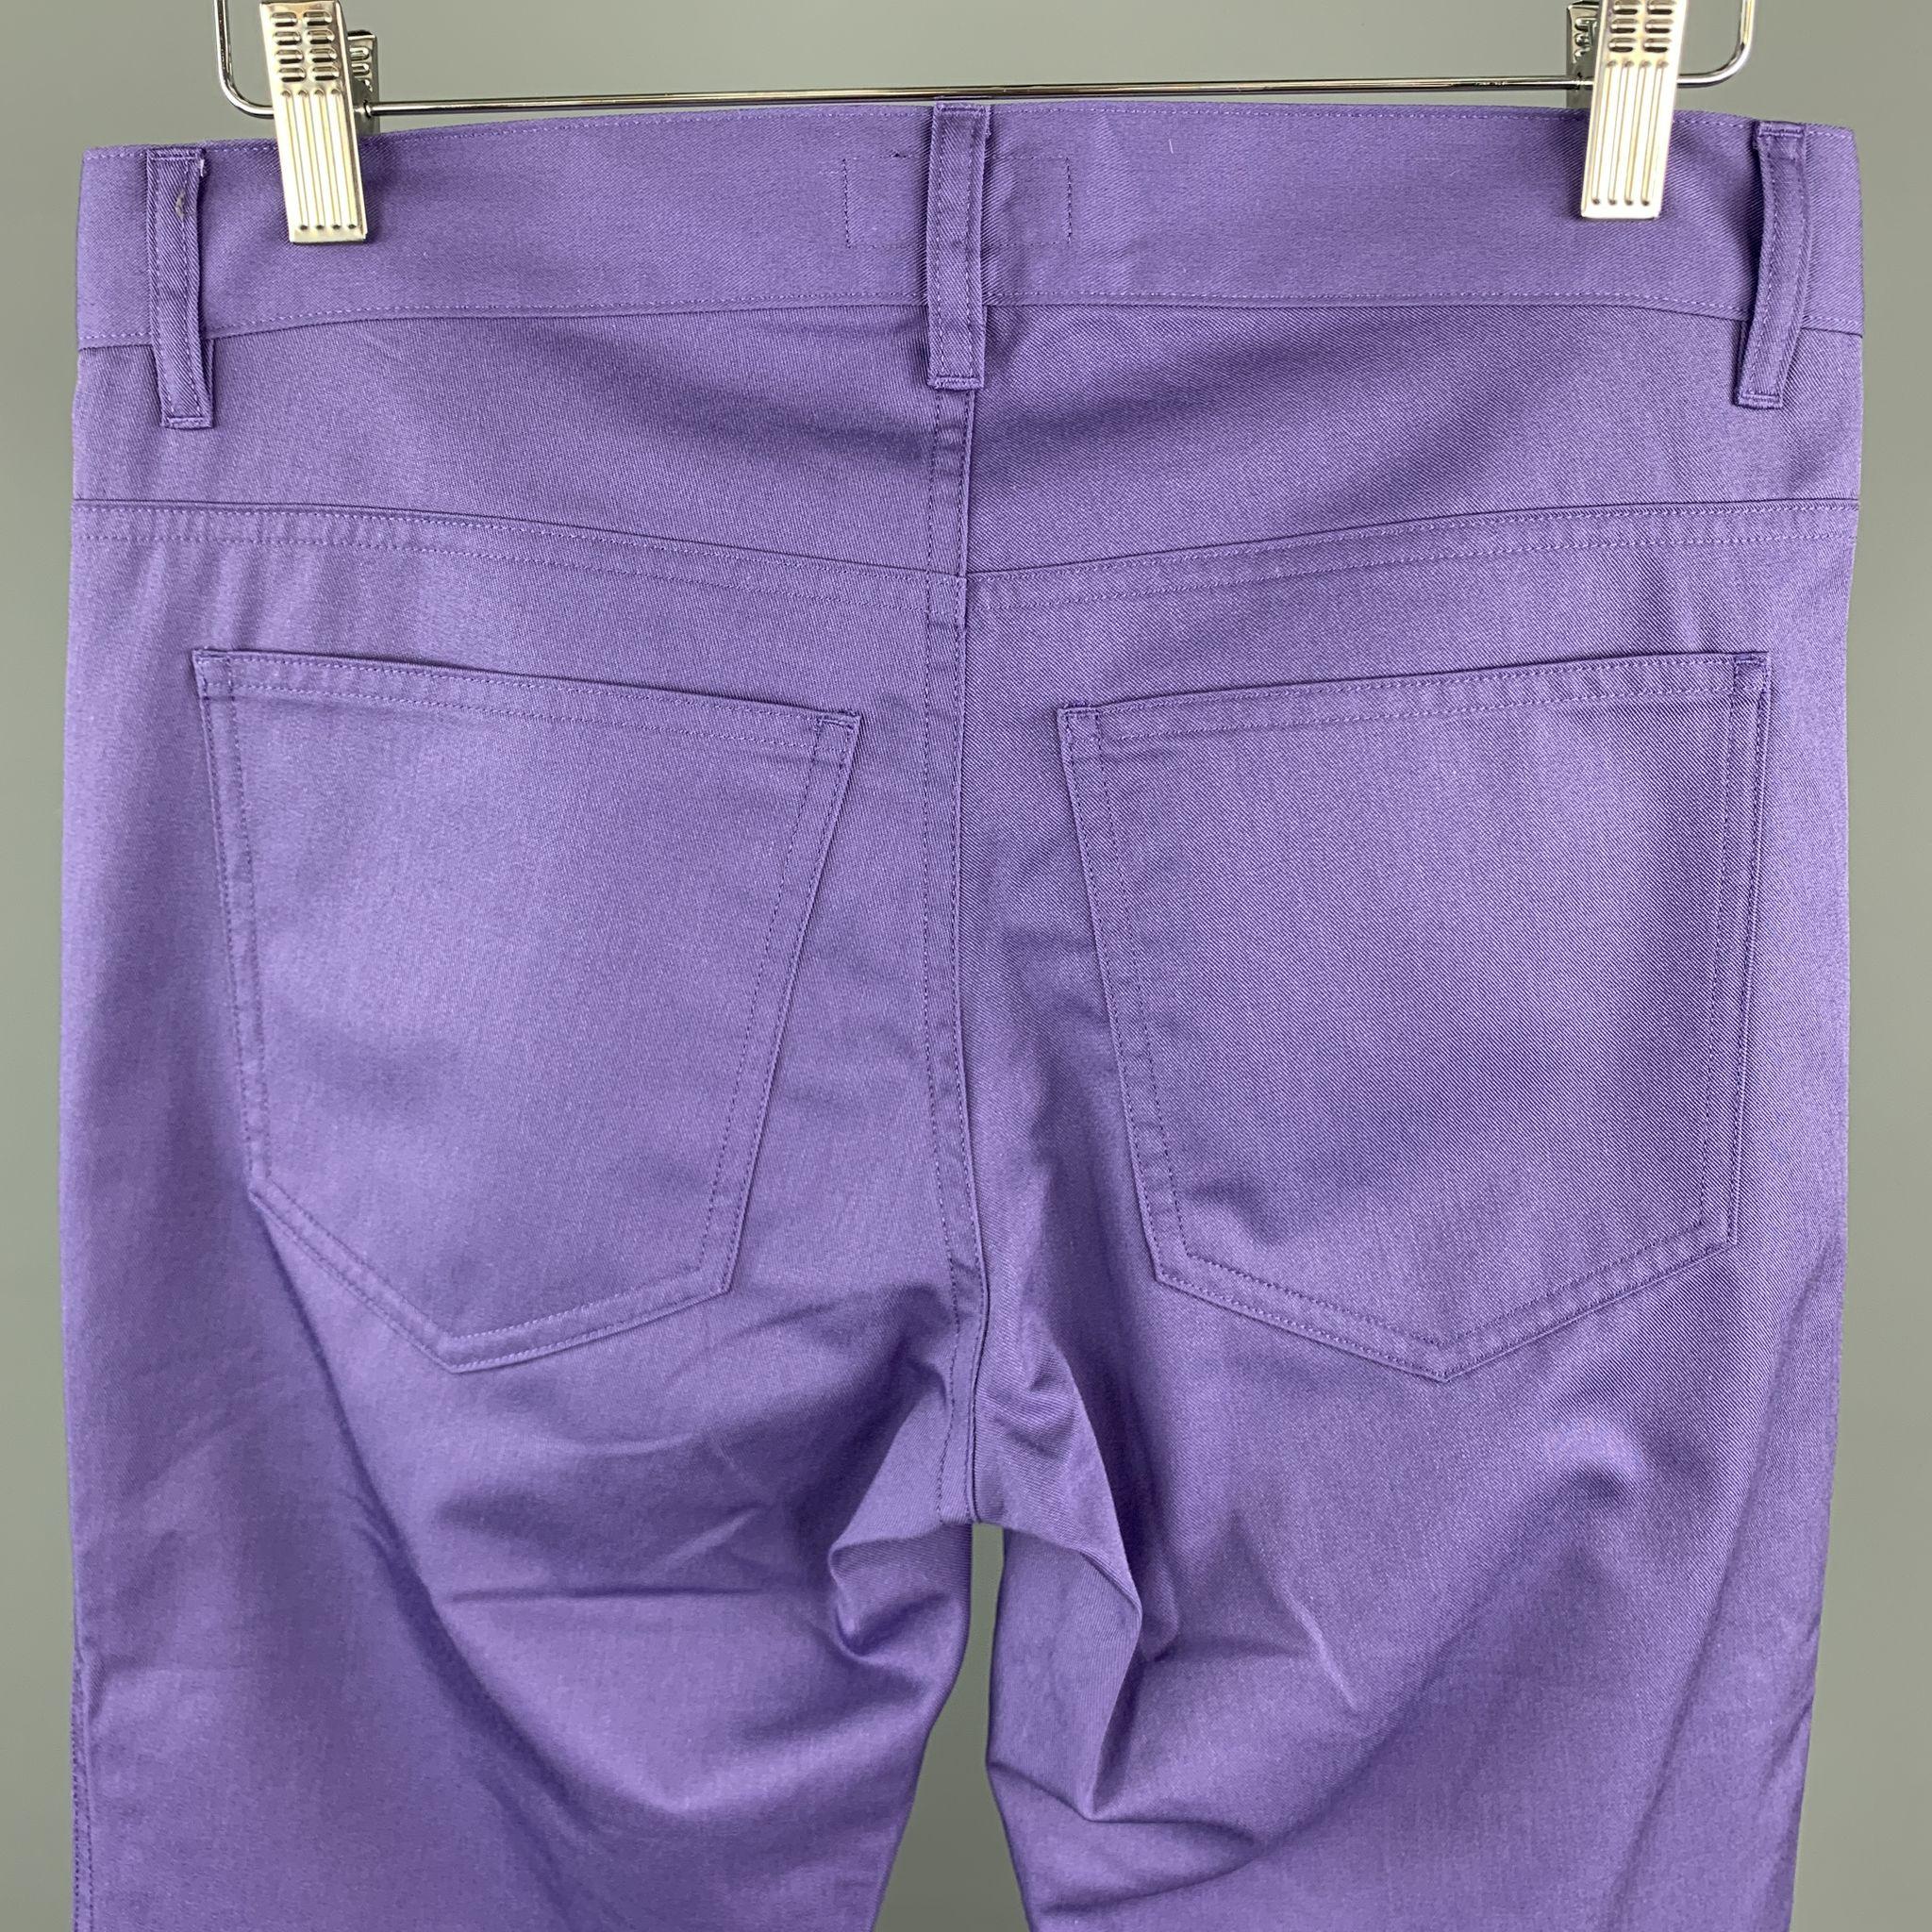 AGNES B. Size 30 Purple Cotton Blend Casual Pants 1